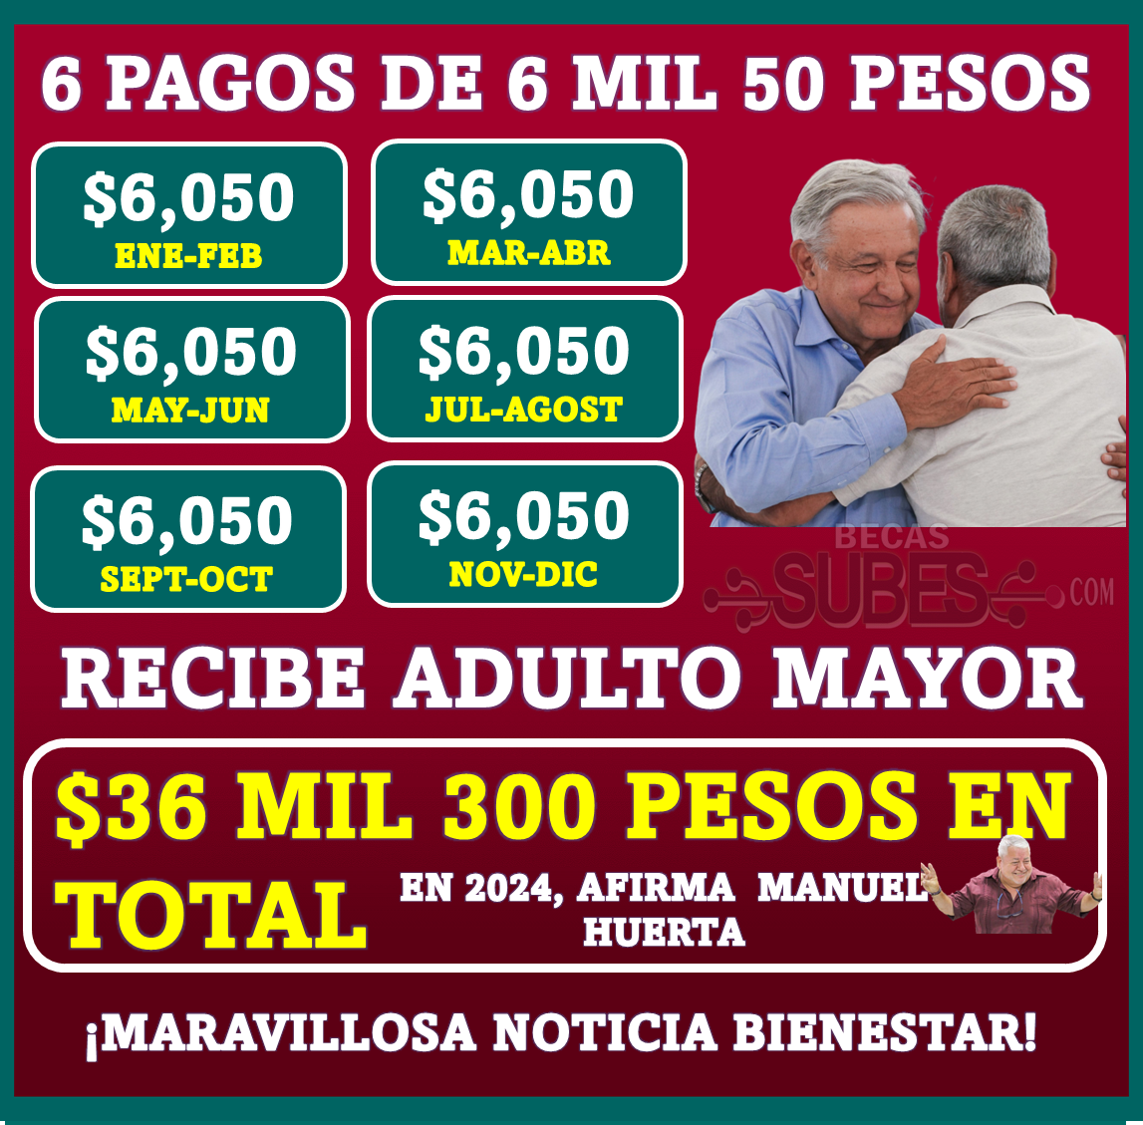 ¡Maravillosa NOTICIA bienestar! Adultos Mayores recibirán 36 mil 300 pesos en total en 2024: 6 pagos de 6 mil 50 pesos, afirma Manuel Huerta ¡Muchas felicidades por su 25 % más de pensión!